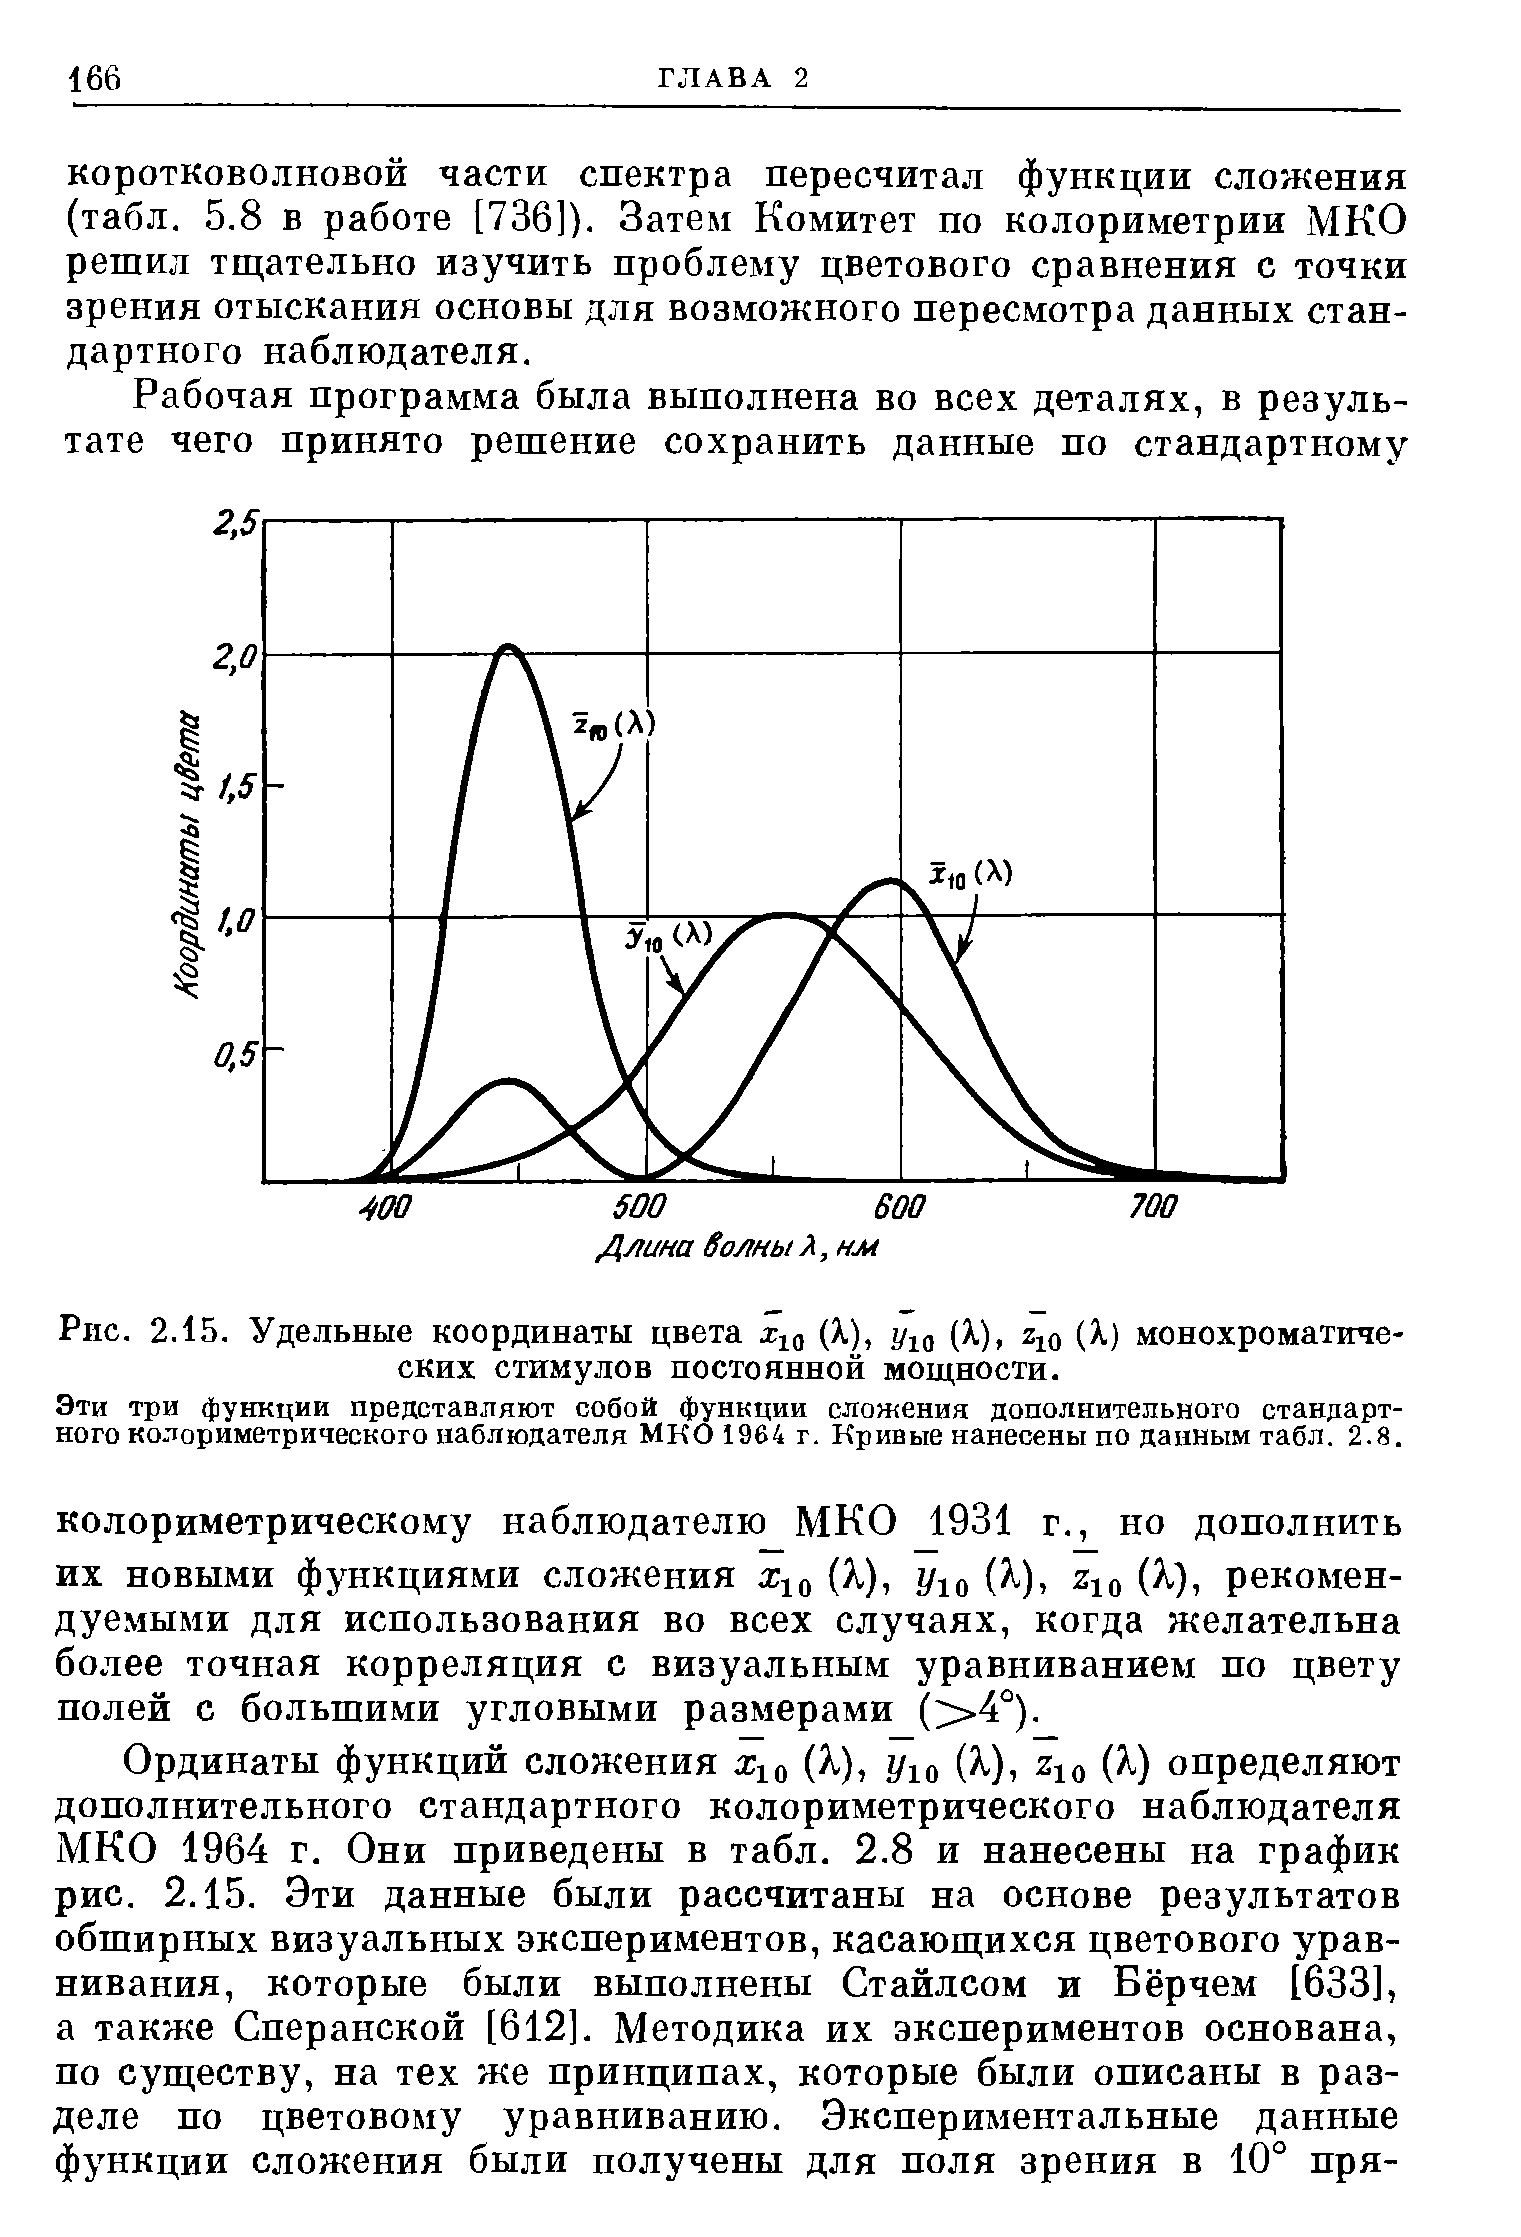 Эти три функции представляют собой функции сложения дополнительного стандартного колориметрического наблюдателя МКО 1964 г. Кривые нанесены по данным табл. 2.8.